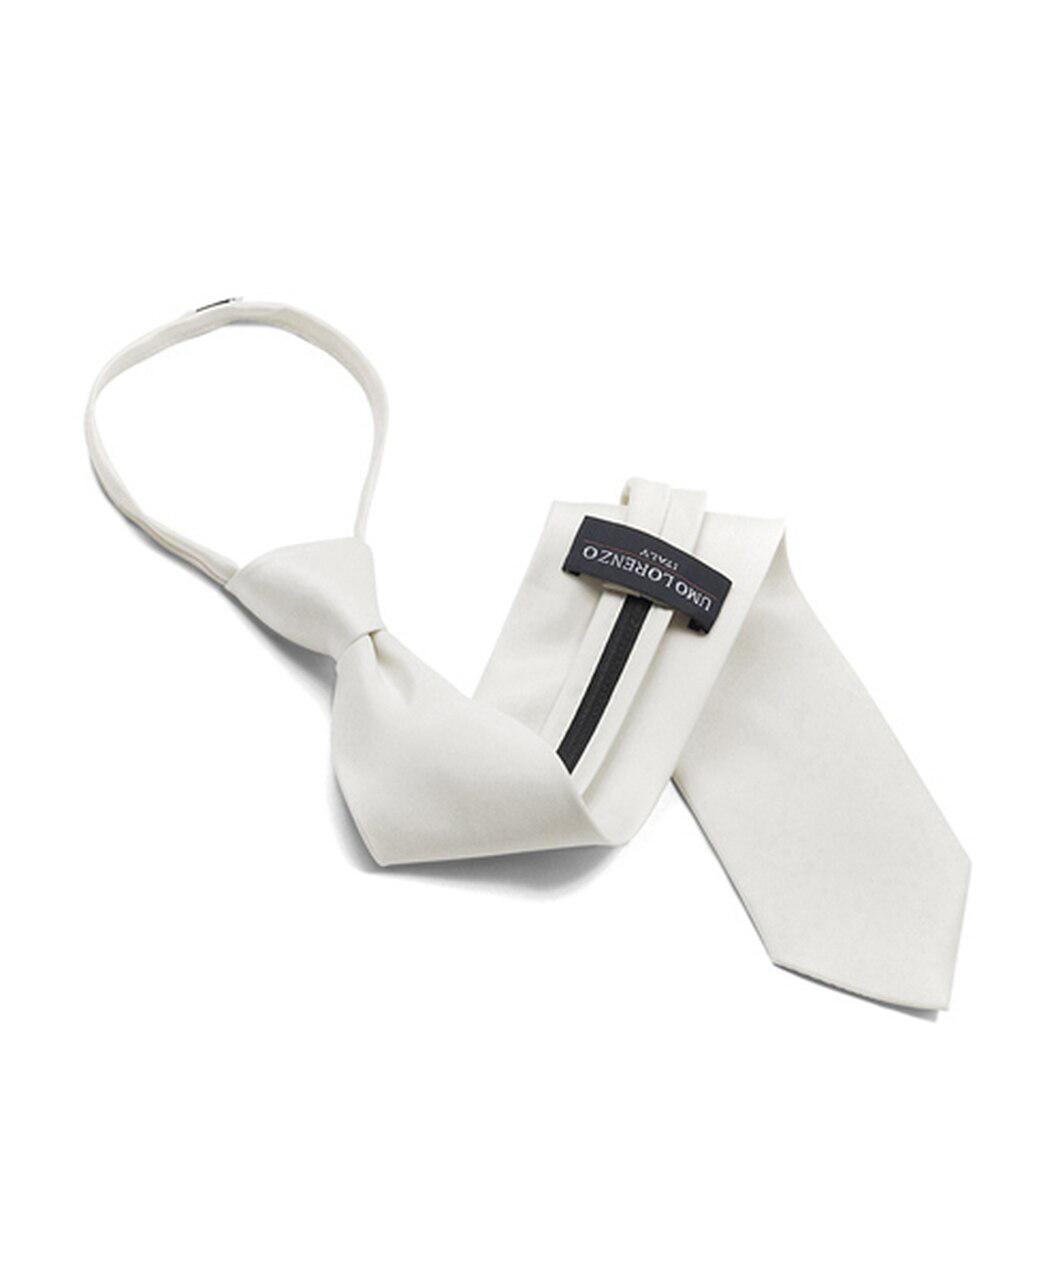  Zip (Up) Tie - White